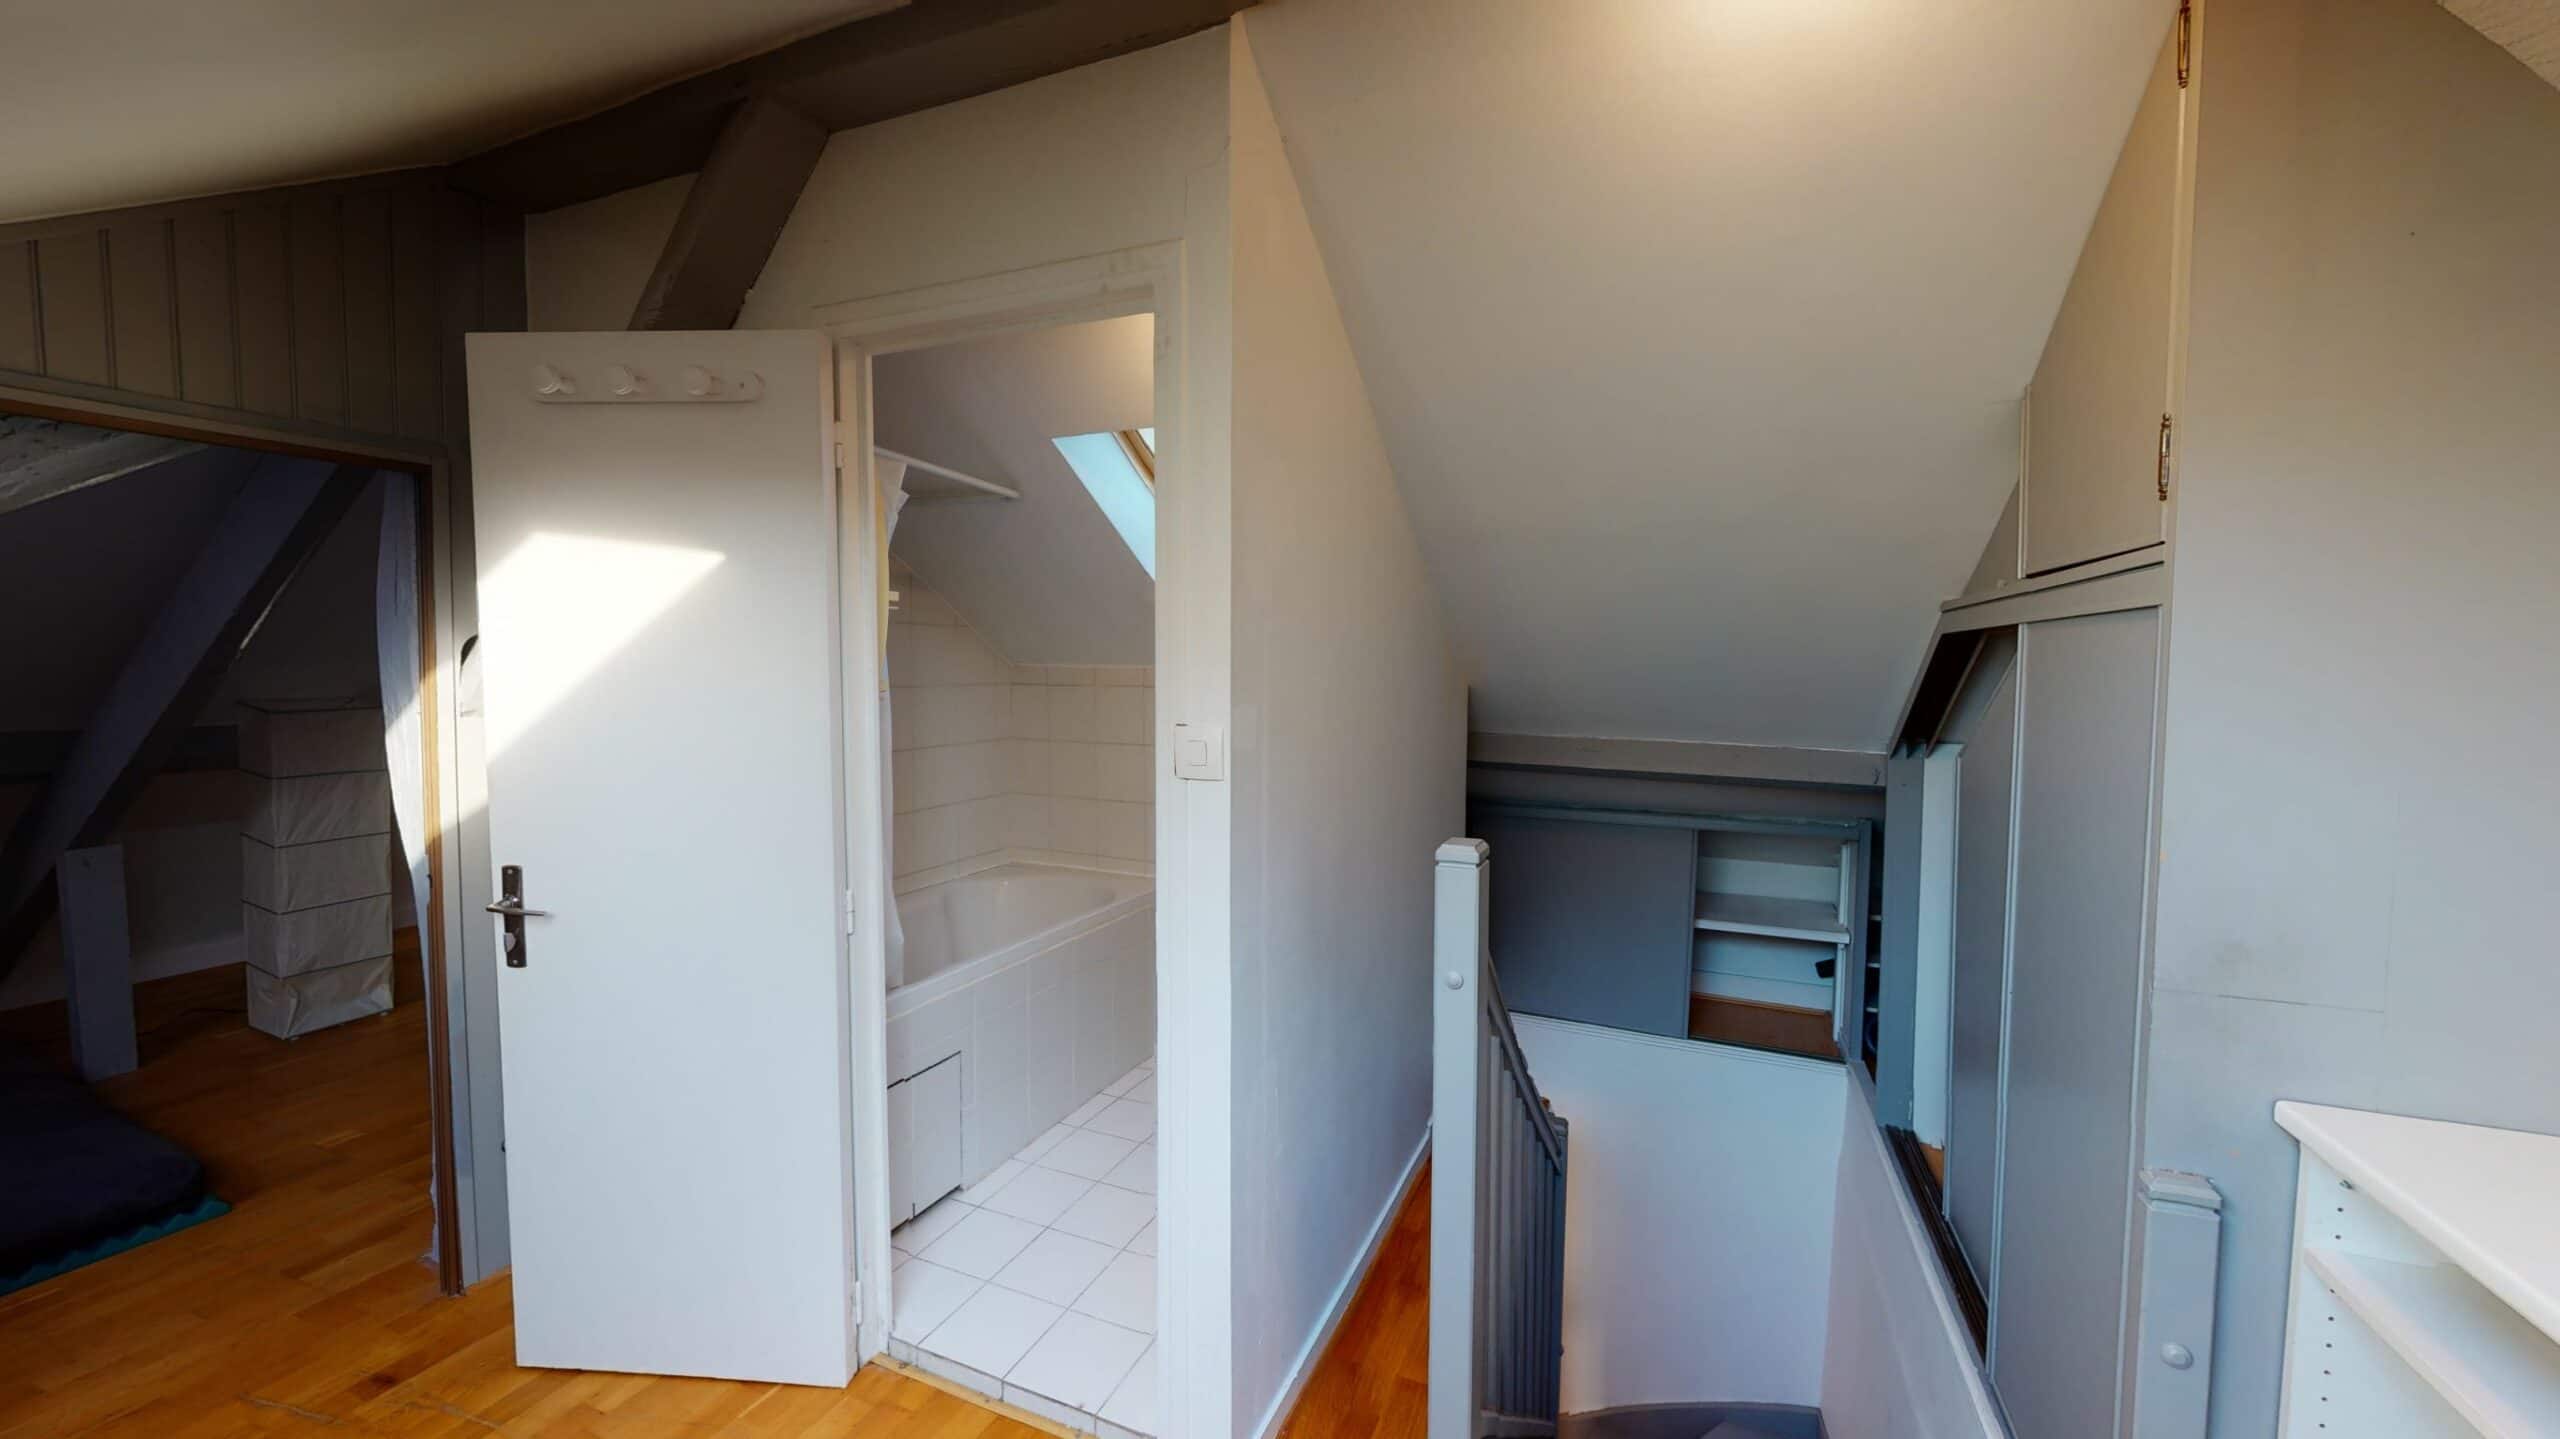 agence immobilière maison alfort: 3 pièces 50 m² meublé, type duplex, rénové